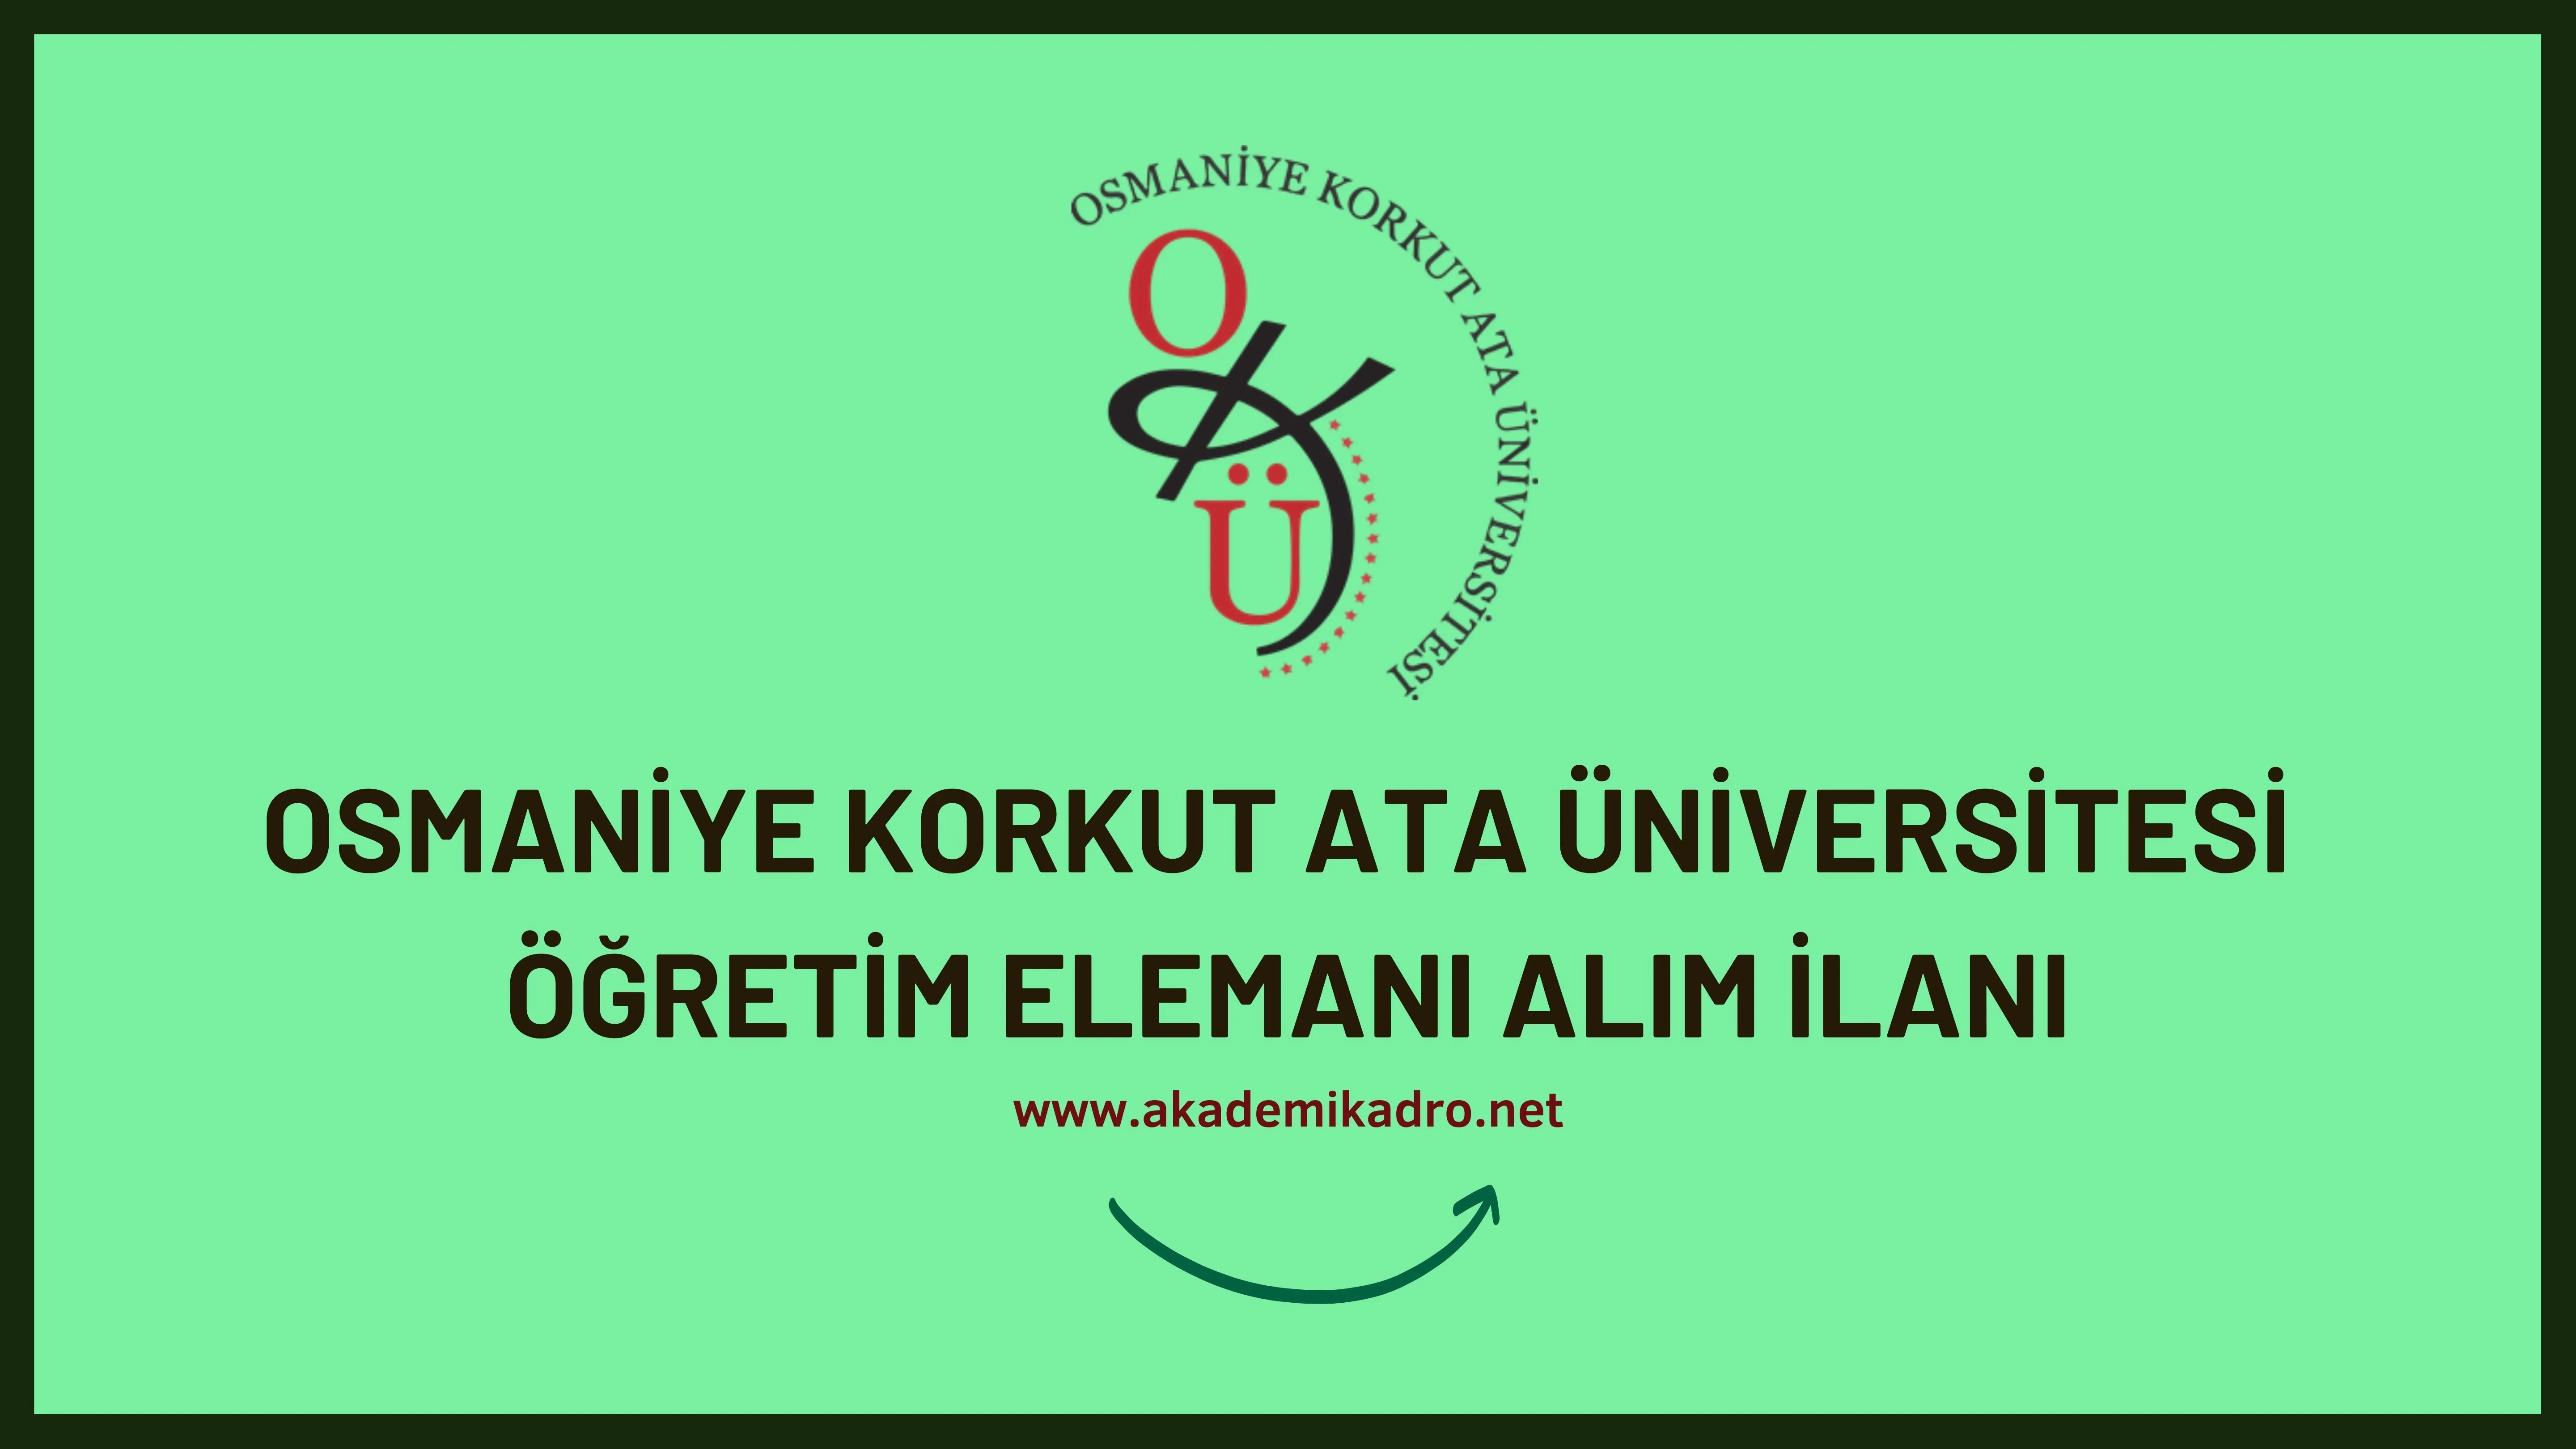 Osmaniye Korkut Ata Üniversitesi 8 Öğretim görevlisi ve 15 Öğretim üyesi alacak.